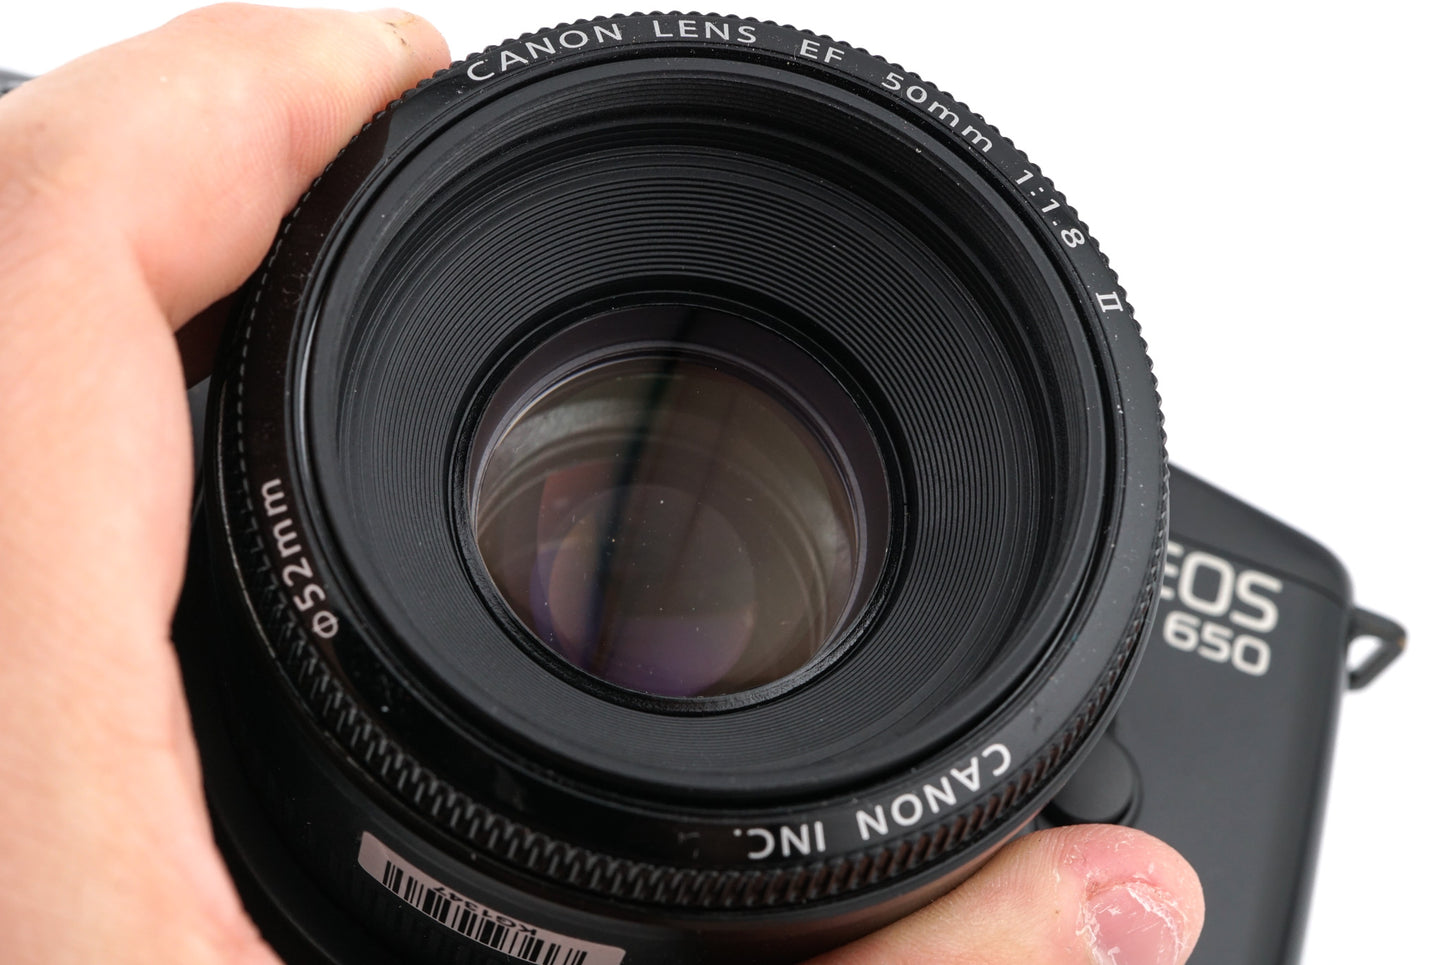 Canon EOS 650 + 50mm f1.8 II